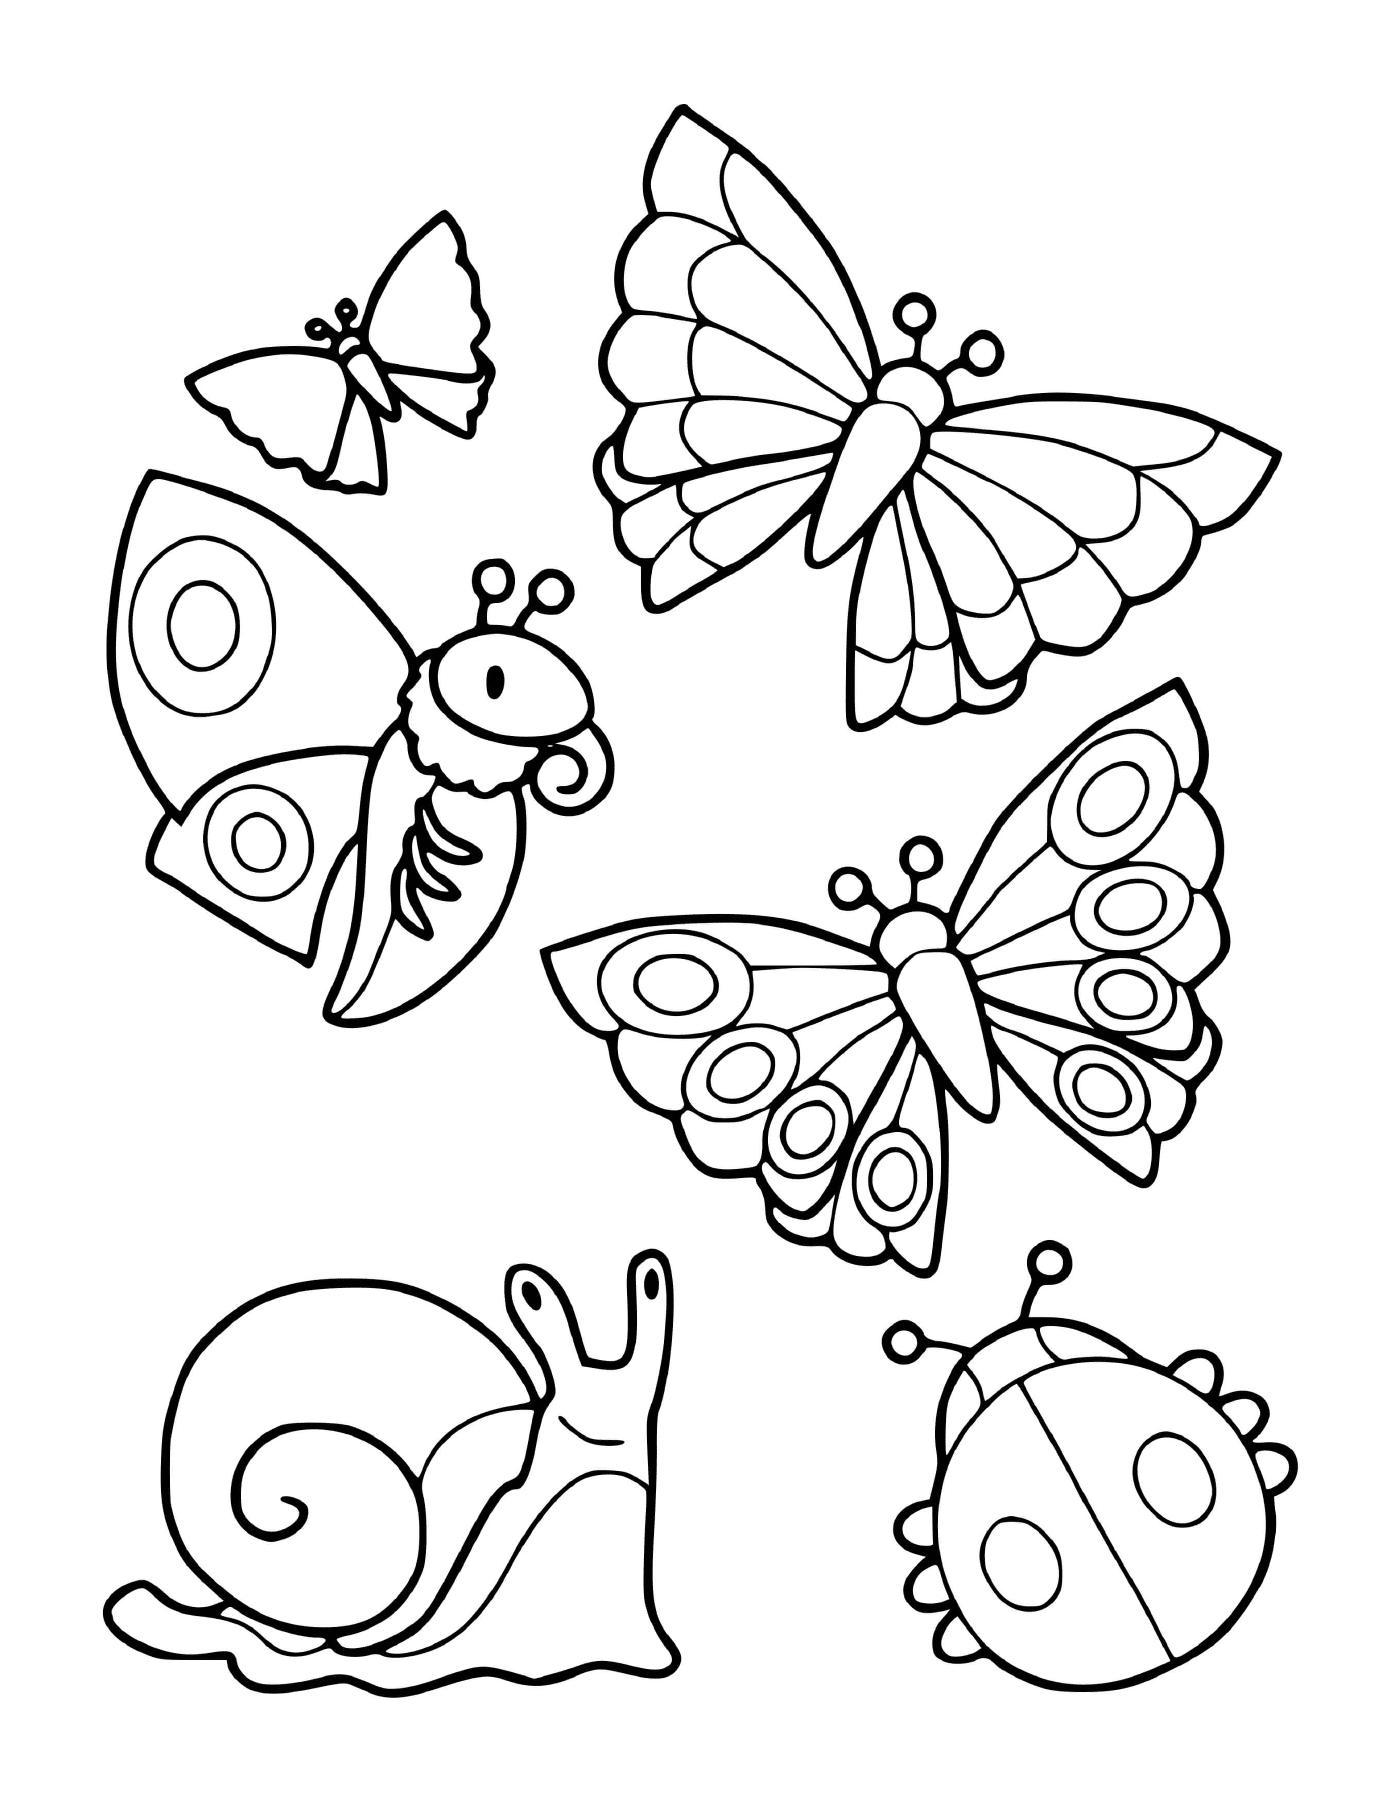  Eine Sammlung von Insekten, darunter Schmetterlinge und eine Schnecke 